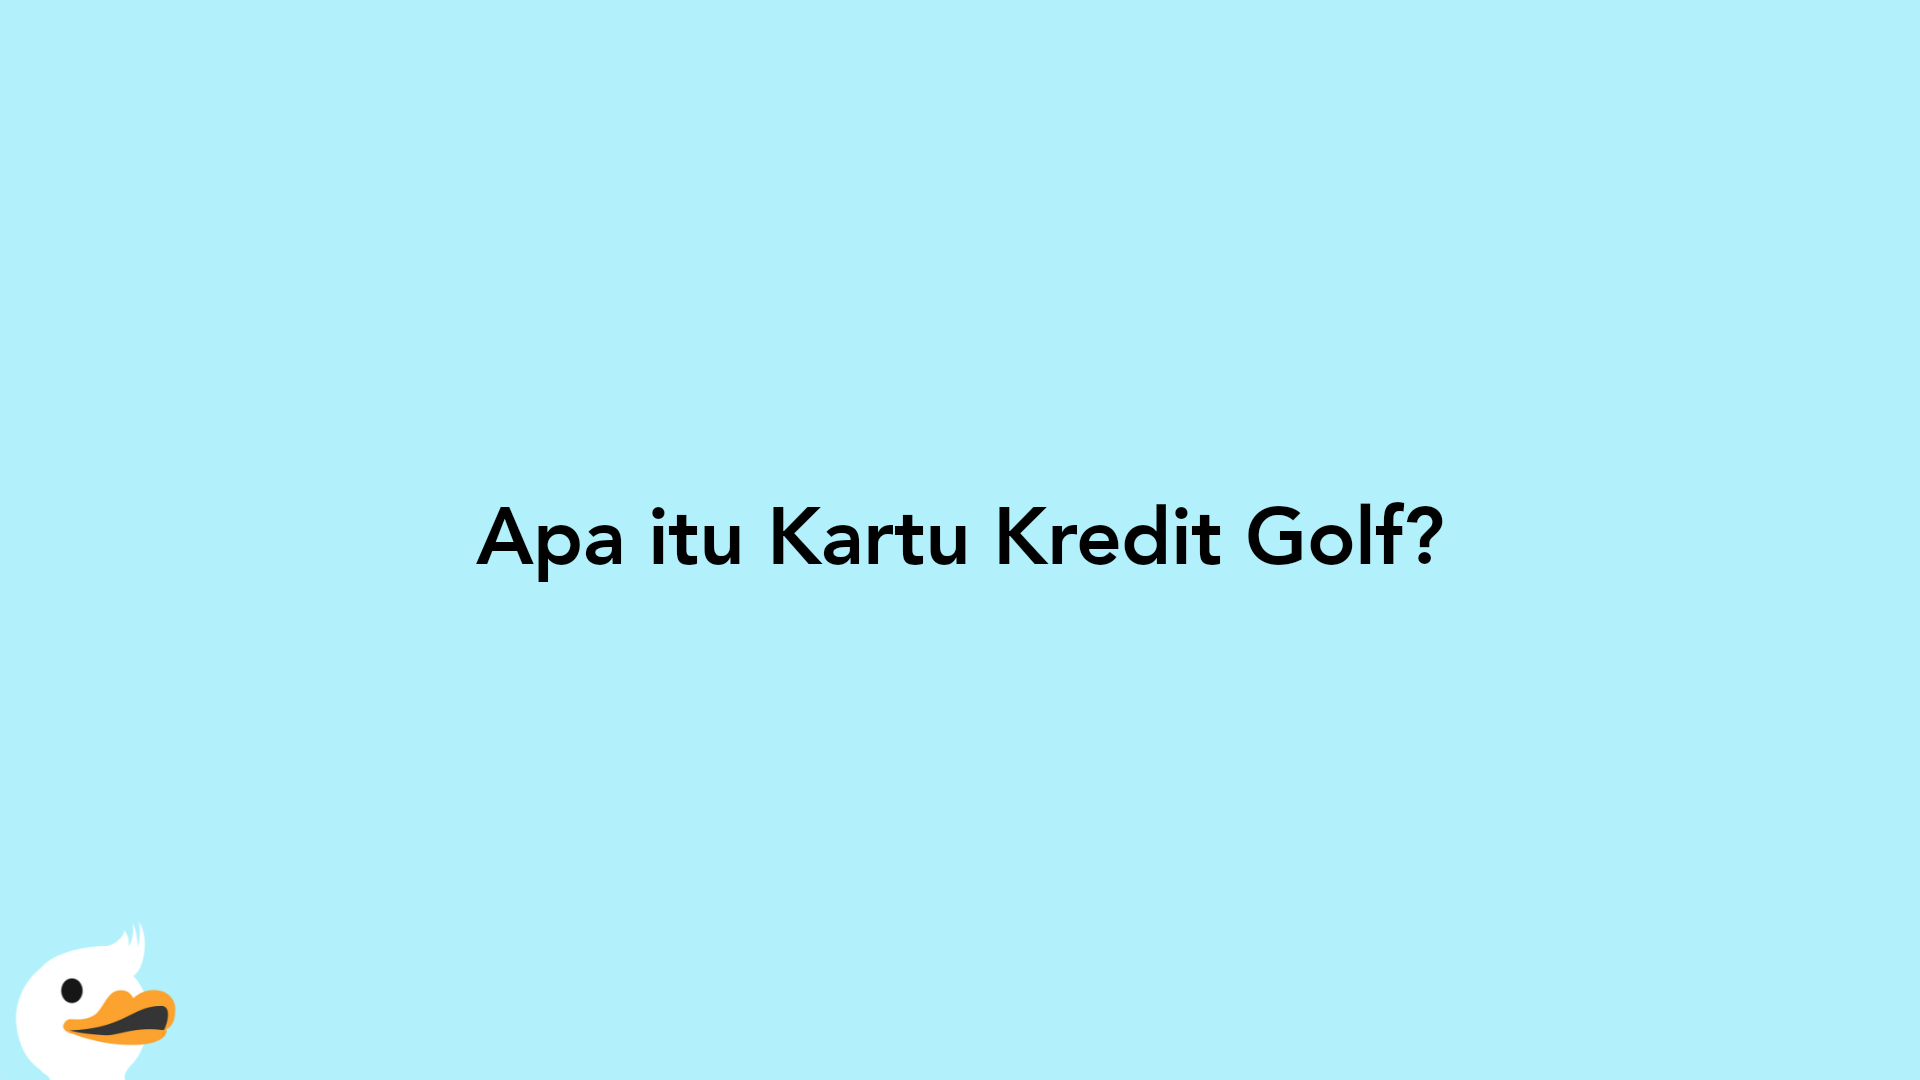 Apa itu Kartu Kredit Golf?